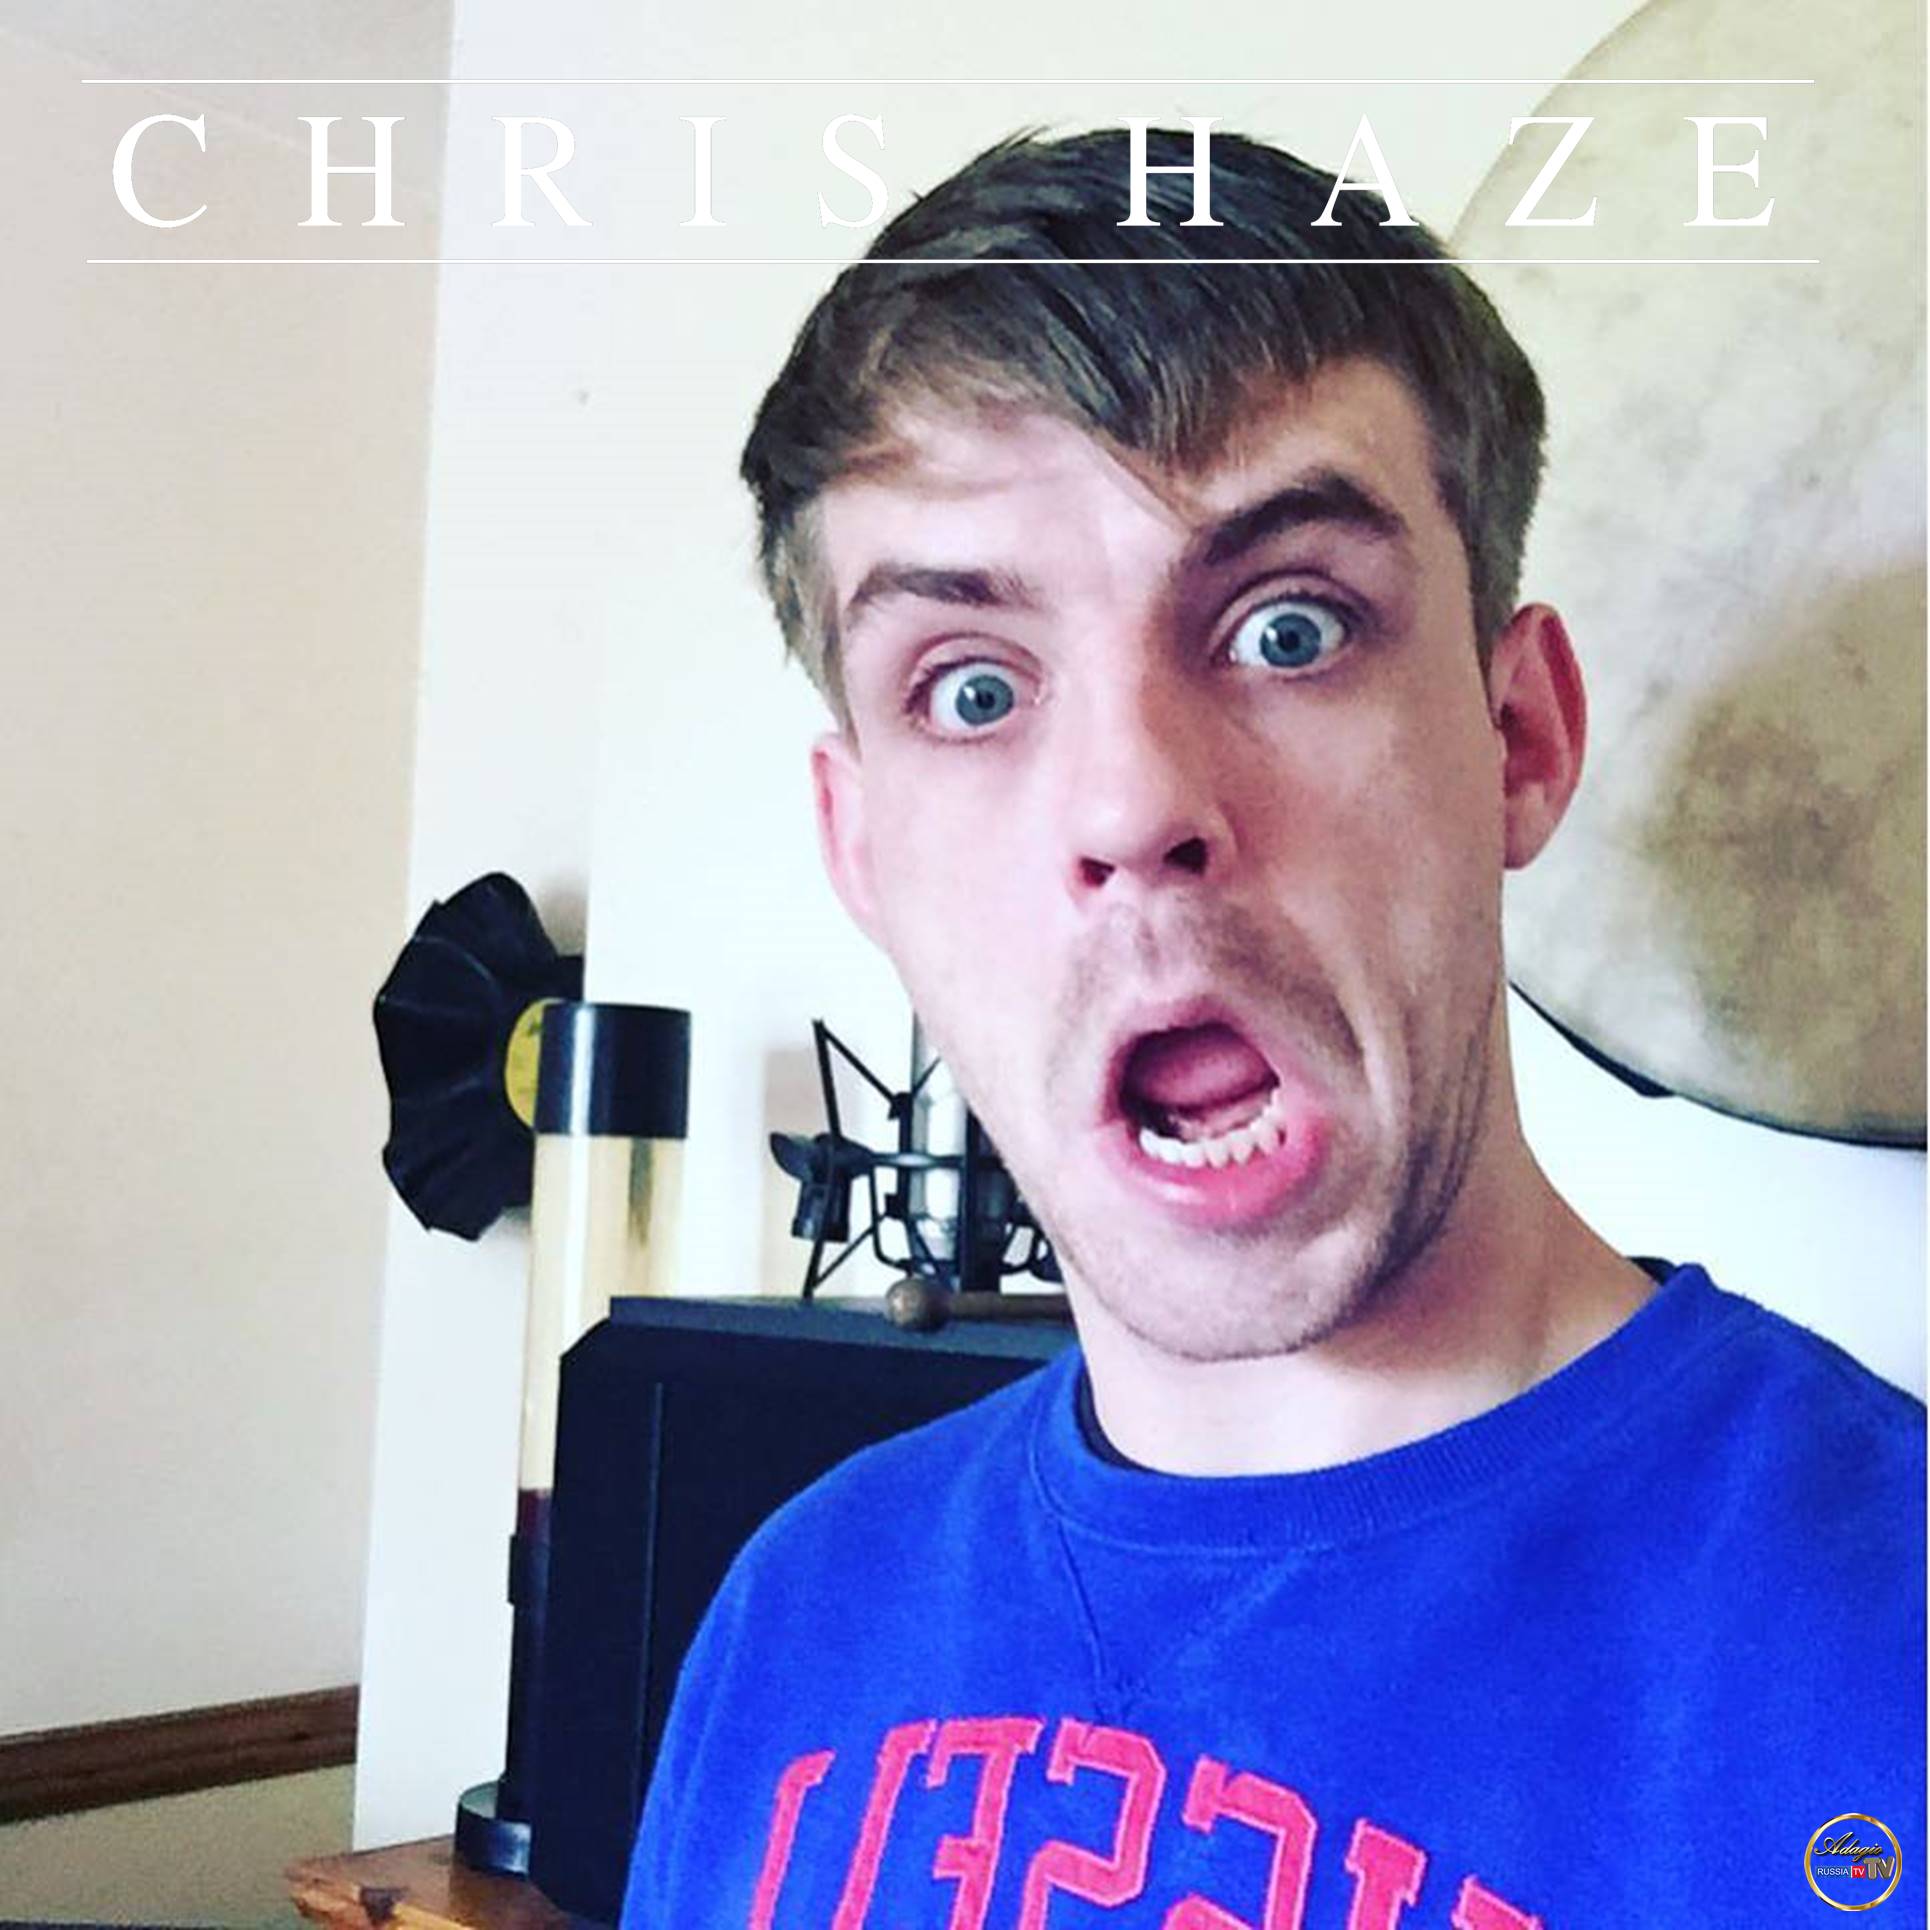 Chris Haze